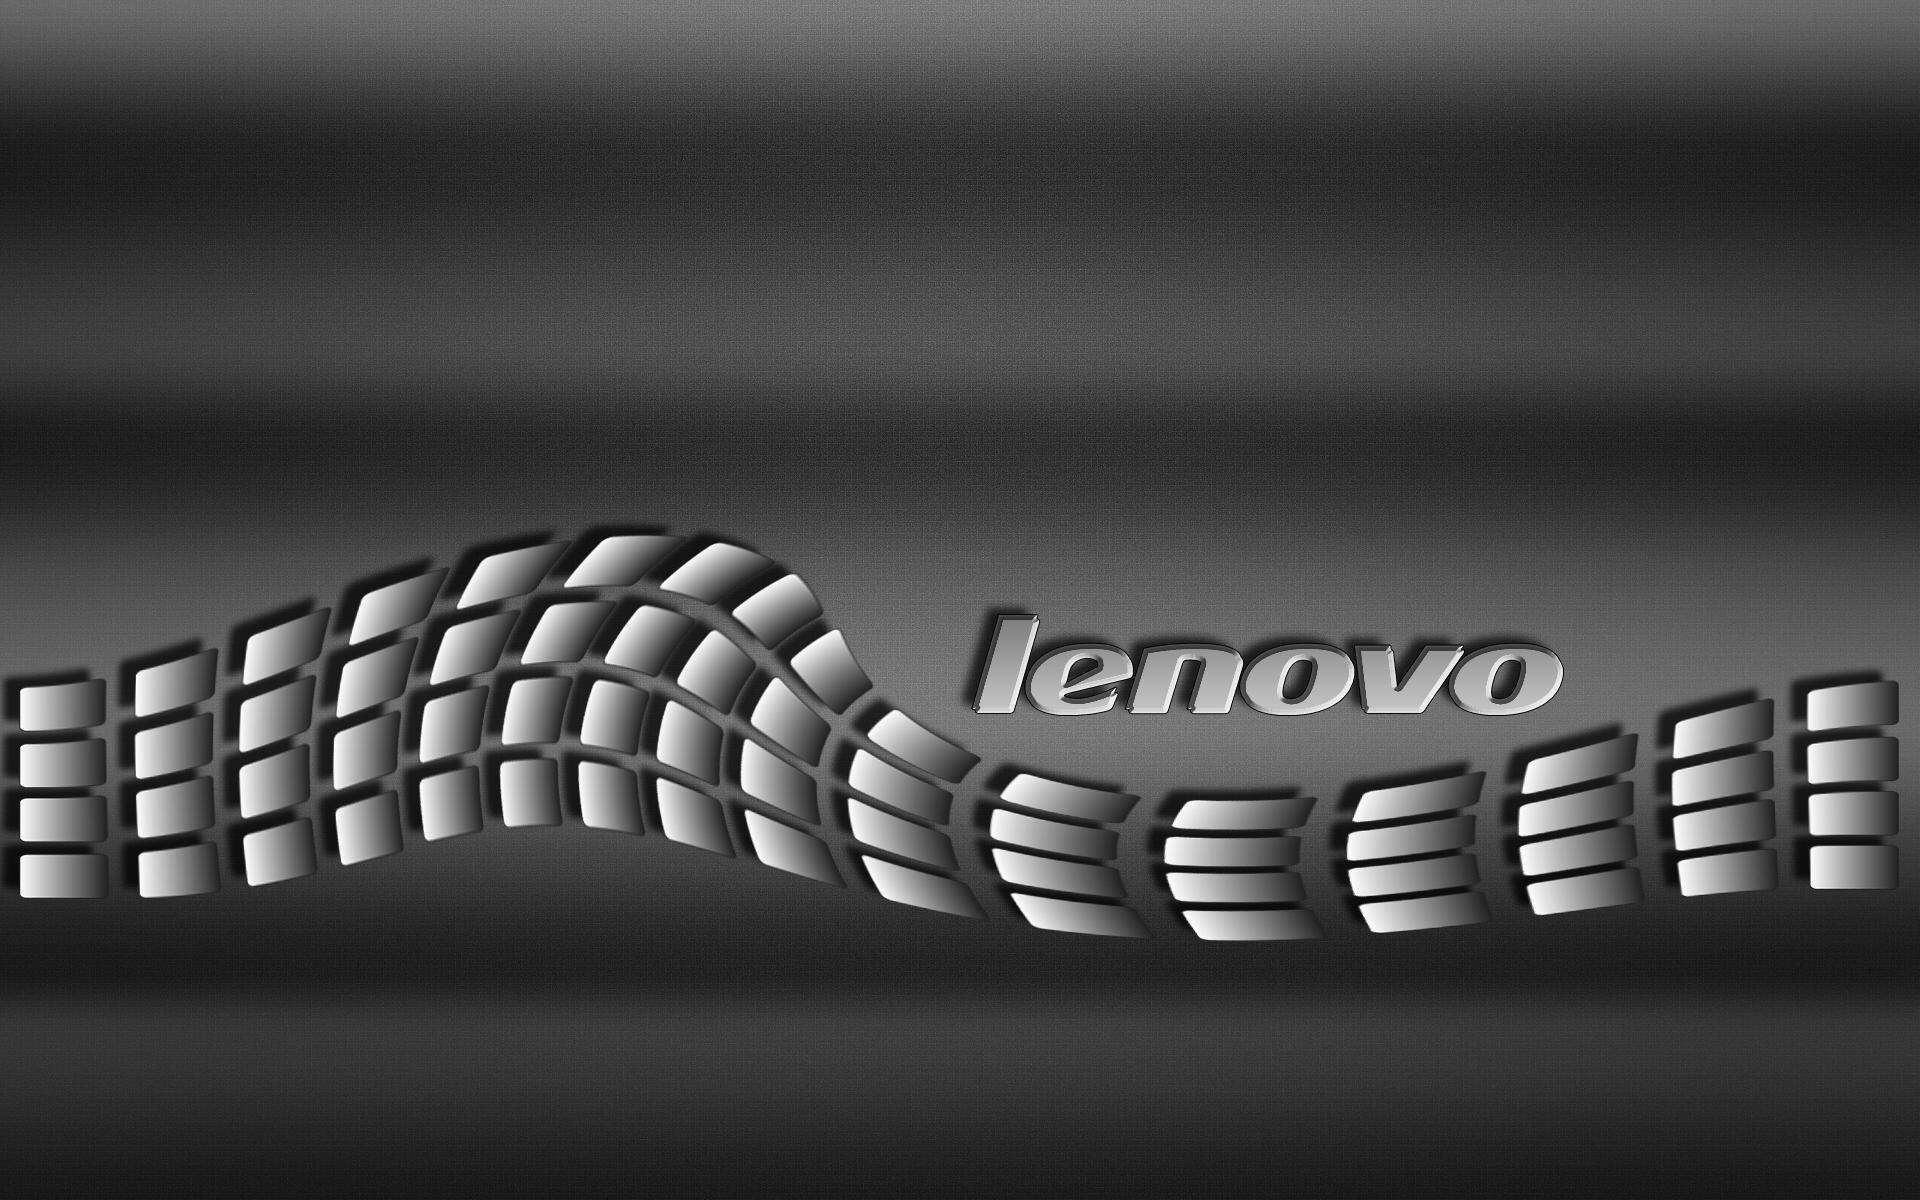 24 Lenovo Wallpaper For Ideapad Bizt Wallpaper